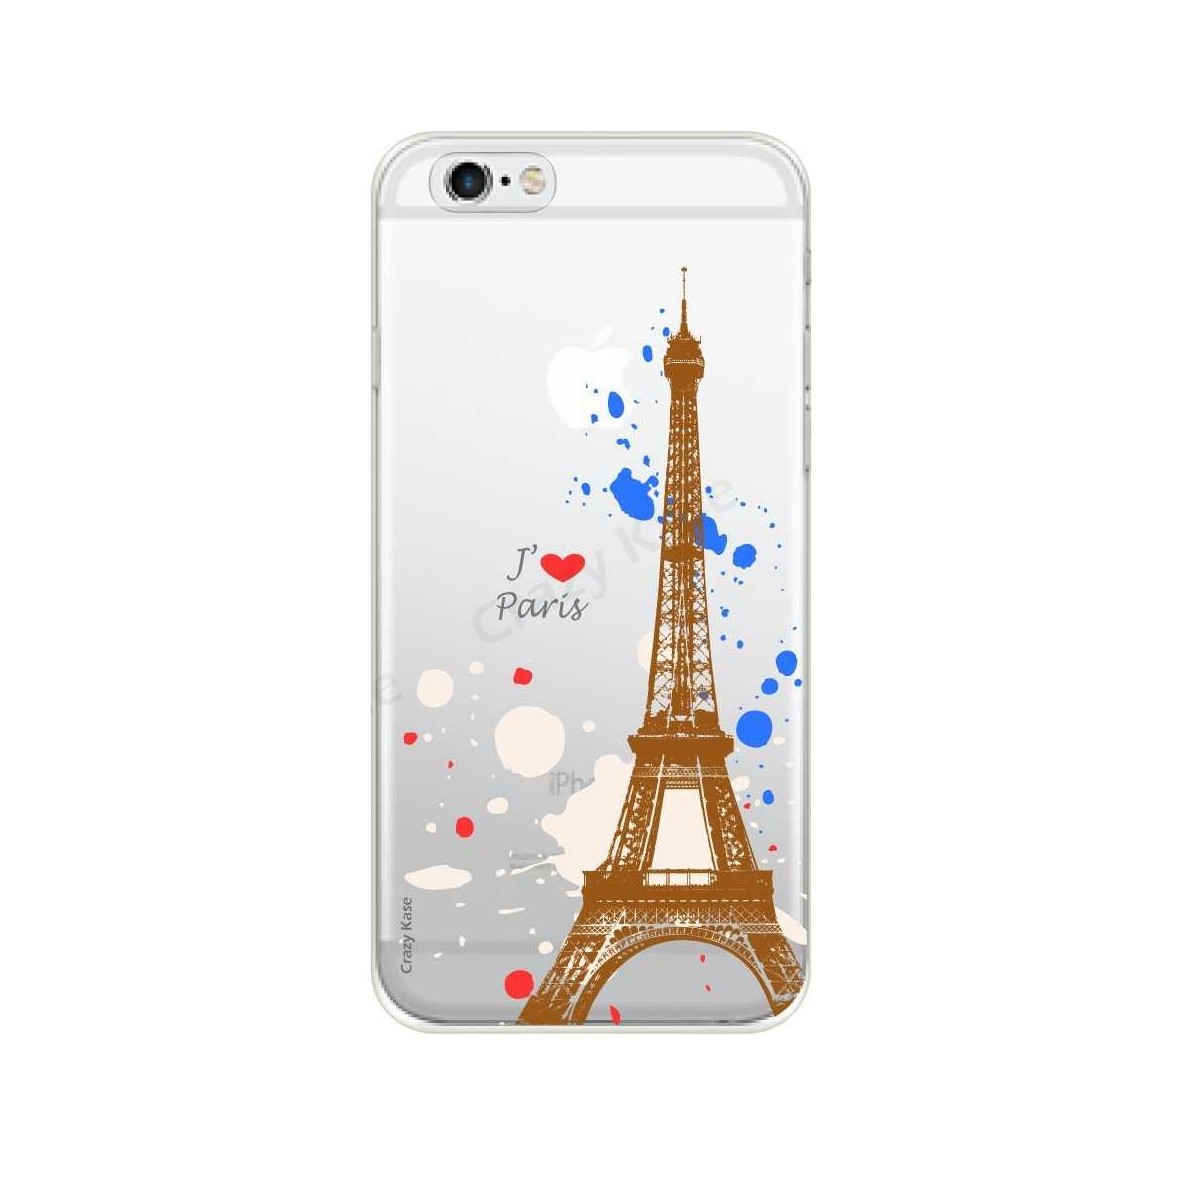 Coque iPhone 6 / 6s souple Paris - Crazy Kase